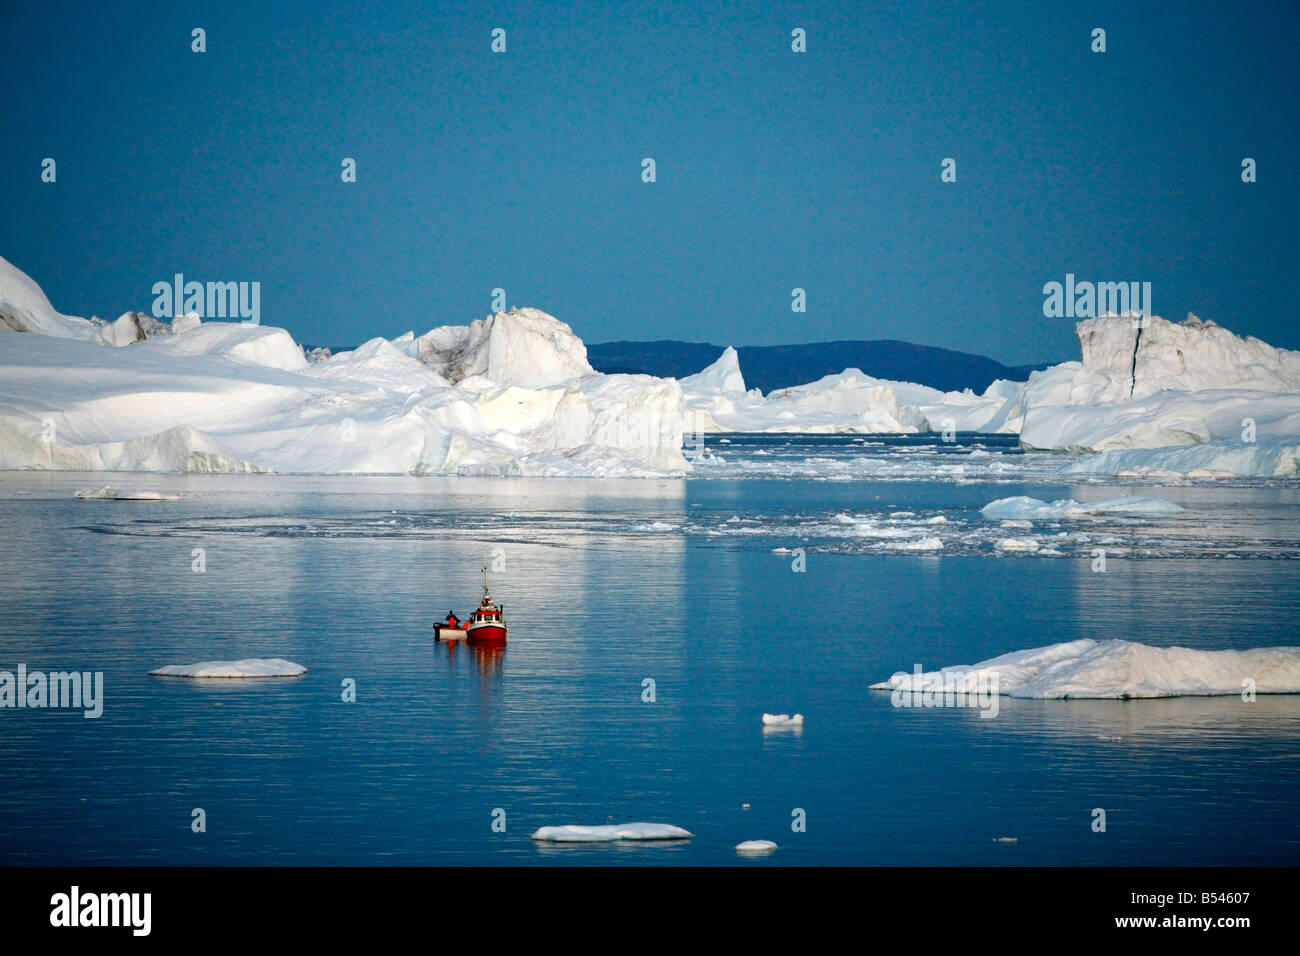 Août 2008 - bateau de pêche par le Glacier Kangerlua Ilulissat Sermeq Kujalleq également connu sous le nom de la baie de Disko au Groenland Banque D'Images